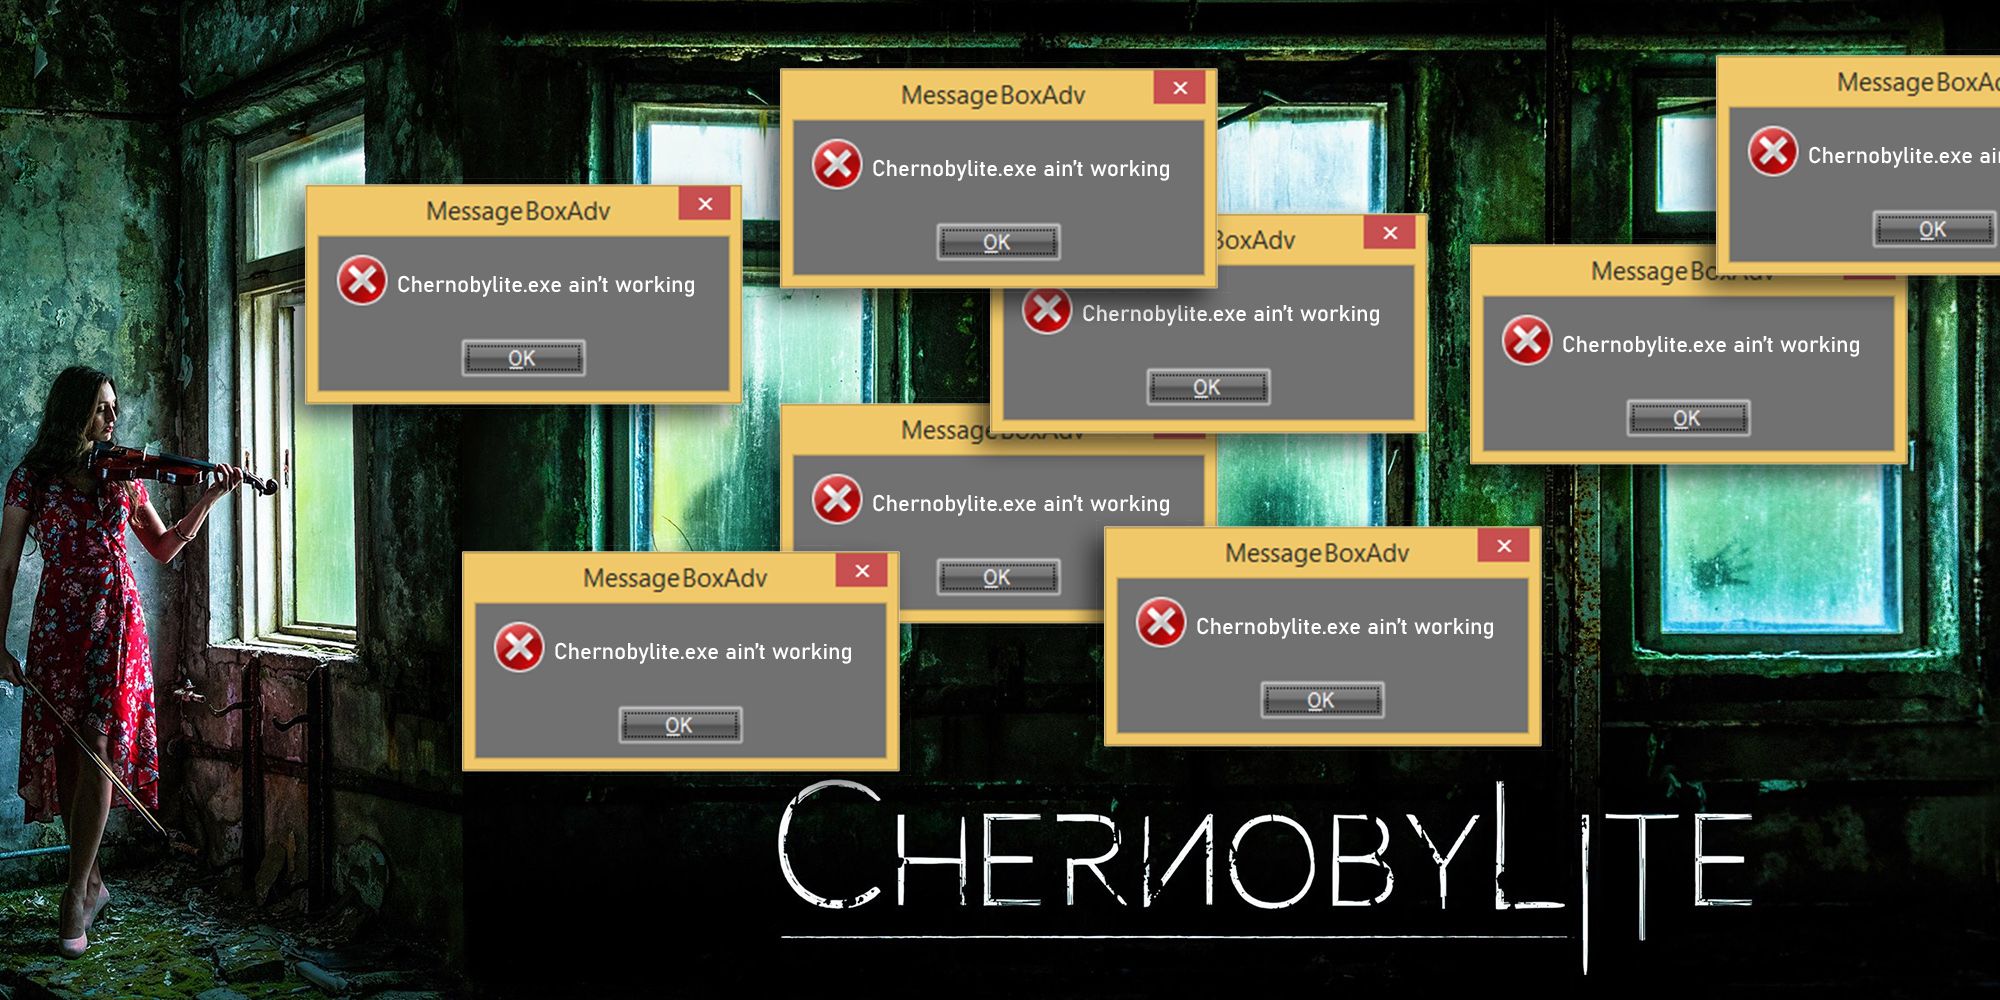 Chernobylite - Mock Up Image Making Fun Of The Game Crashing